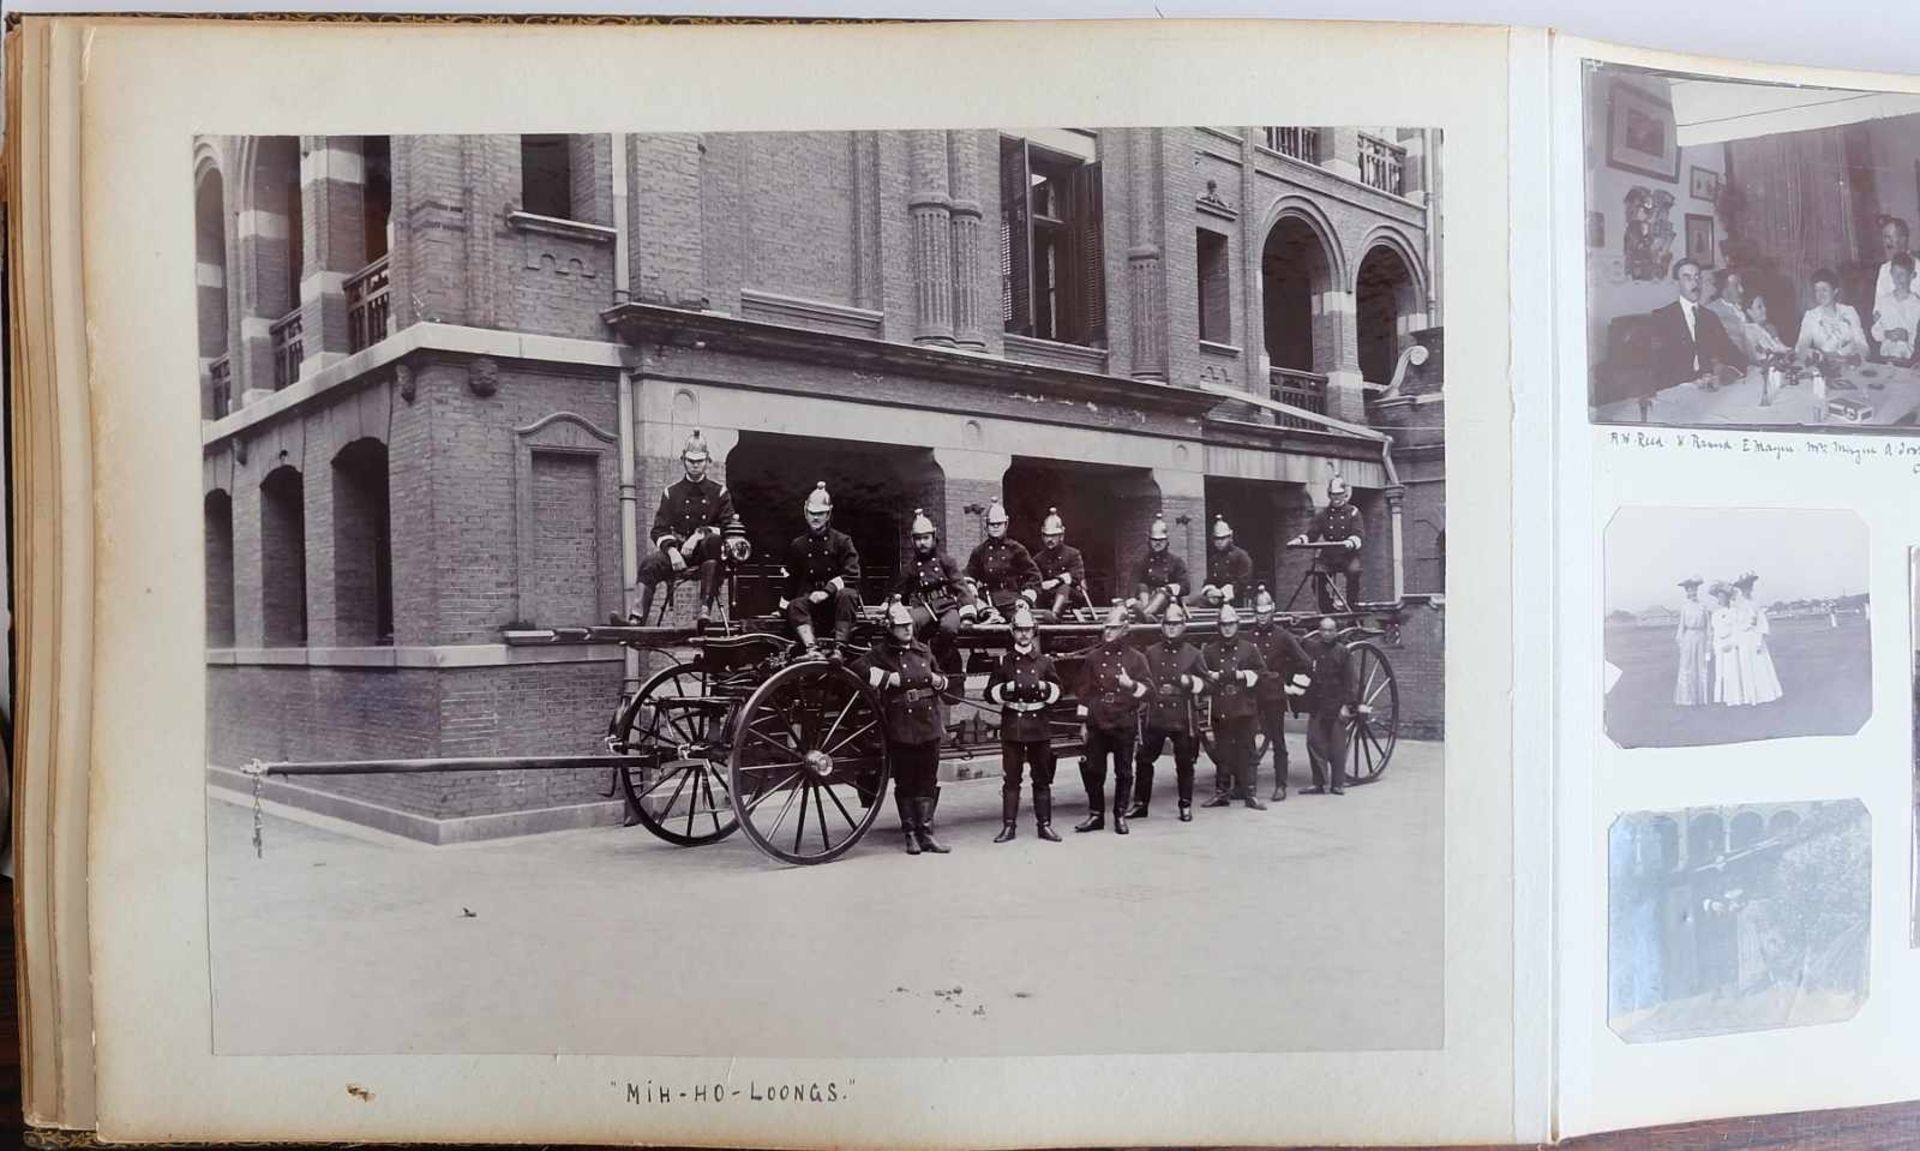 DEUTSCHES REICH, 2 Fotoalben, Shanghai, um 1900, Fotos des Militär- und Freizeitlebens eines - Image 5 of 7